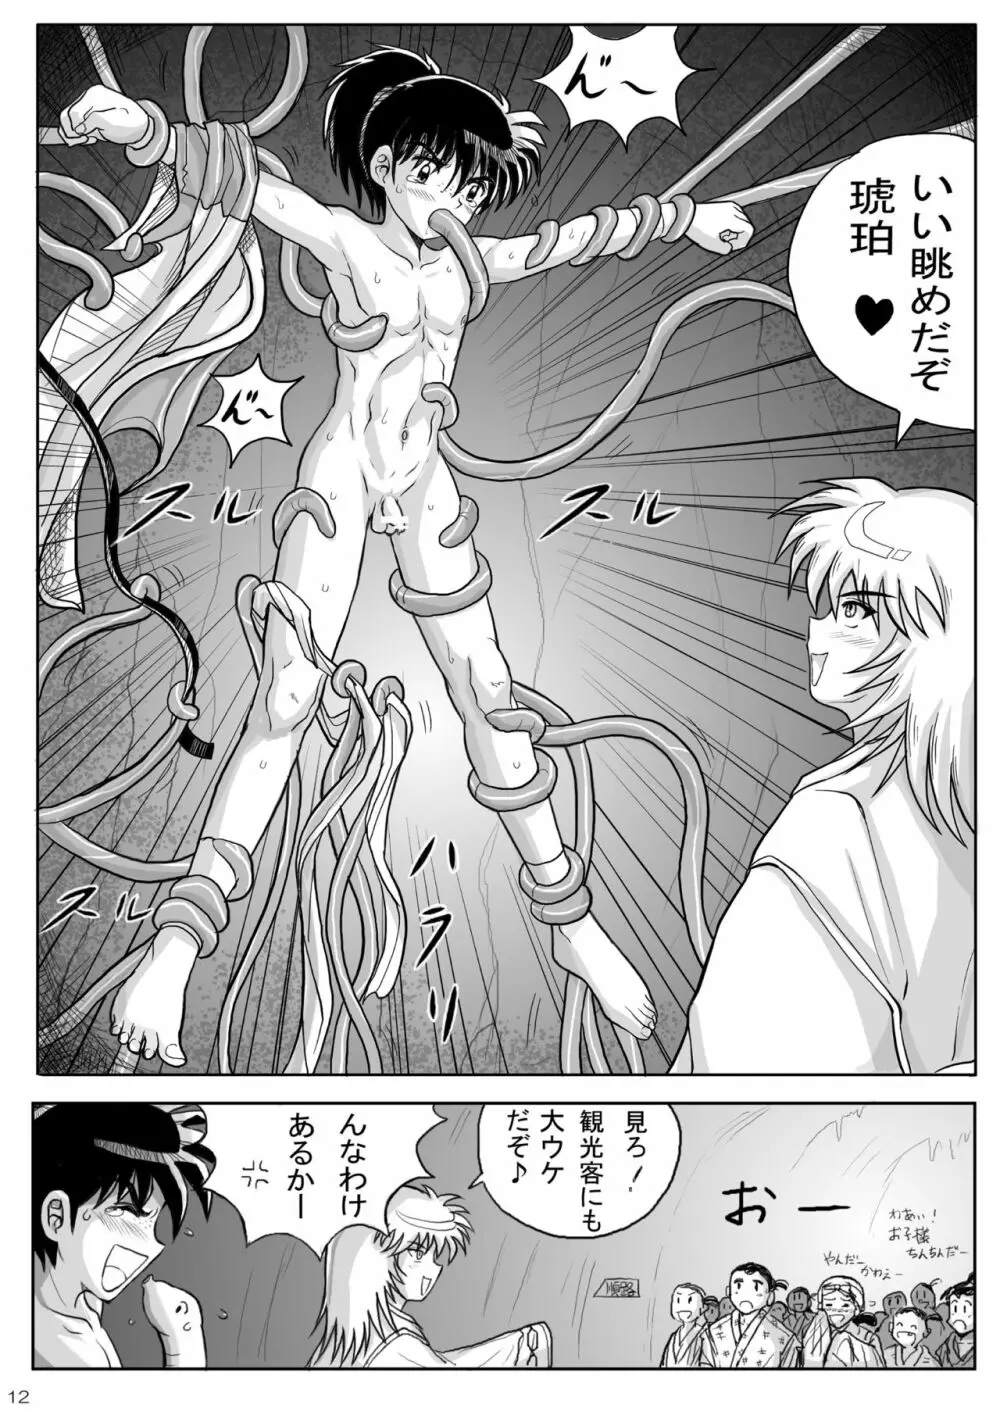 琥珀の壷 漫画版 - page12